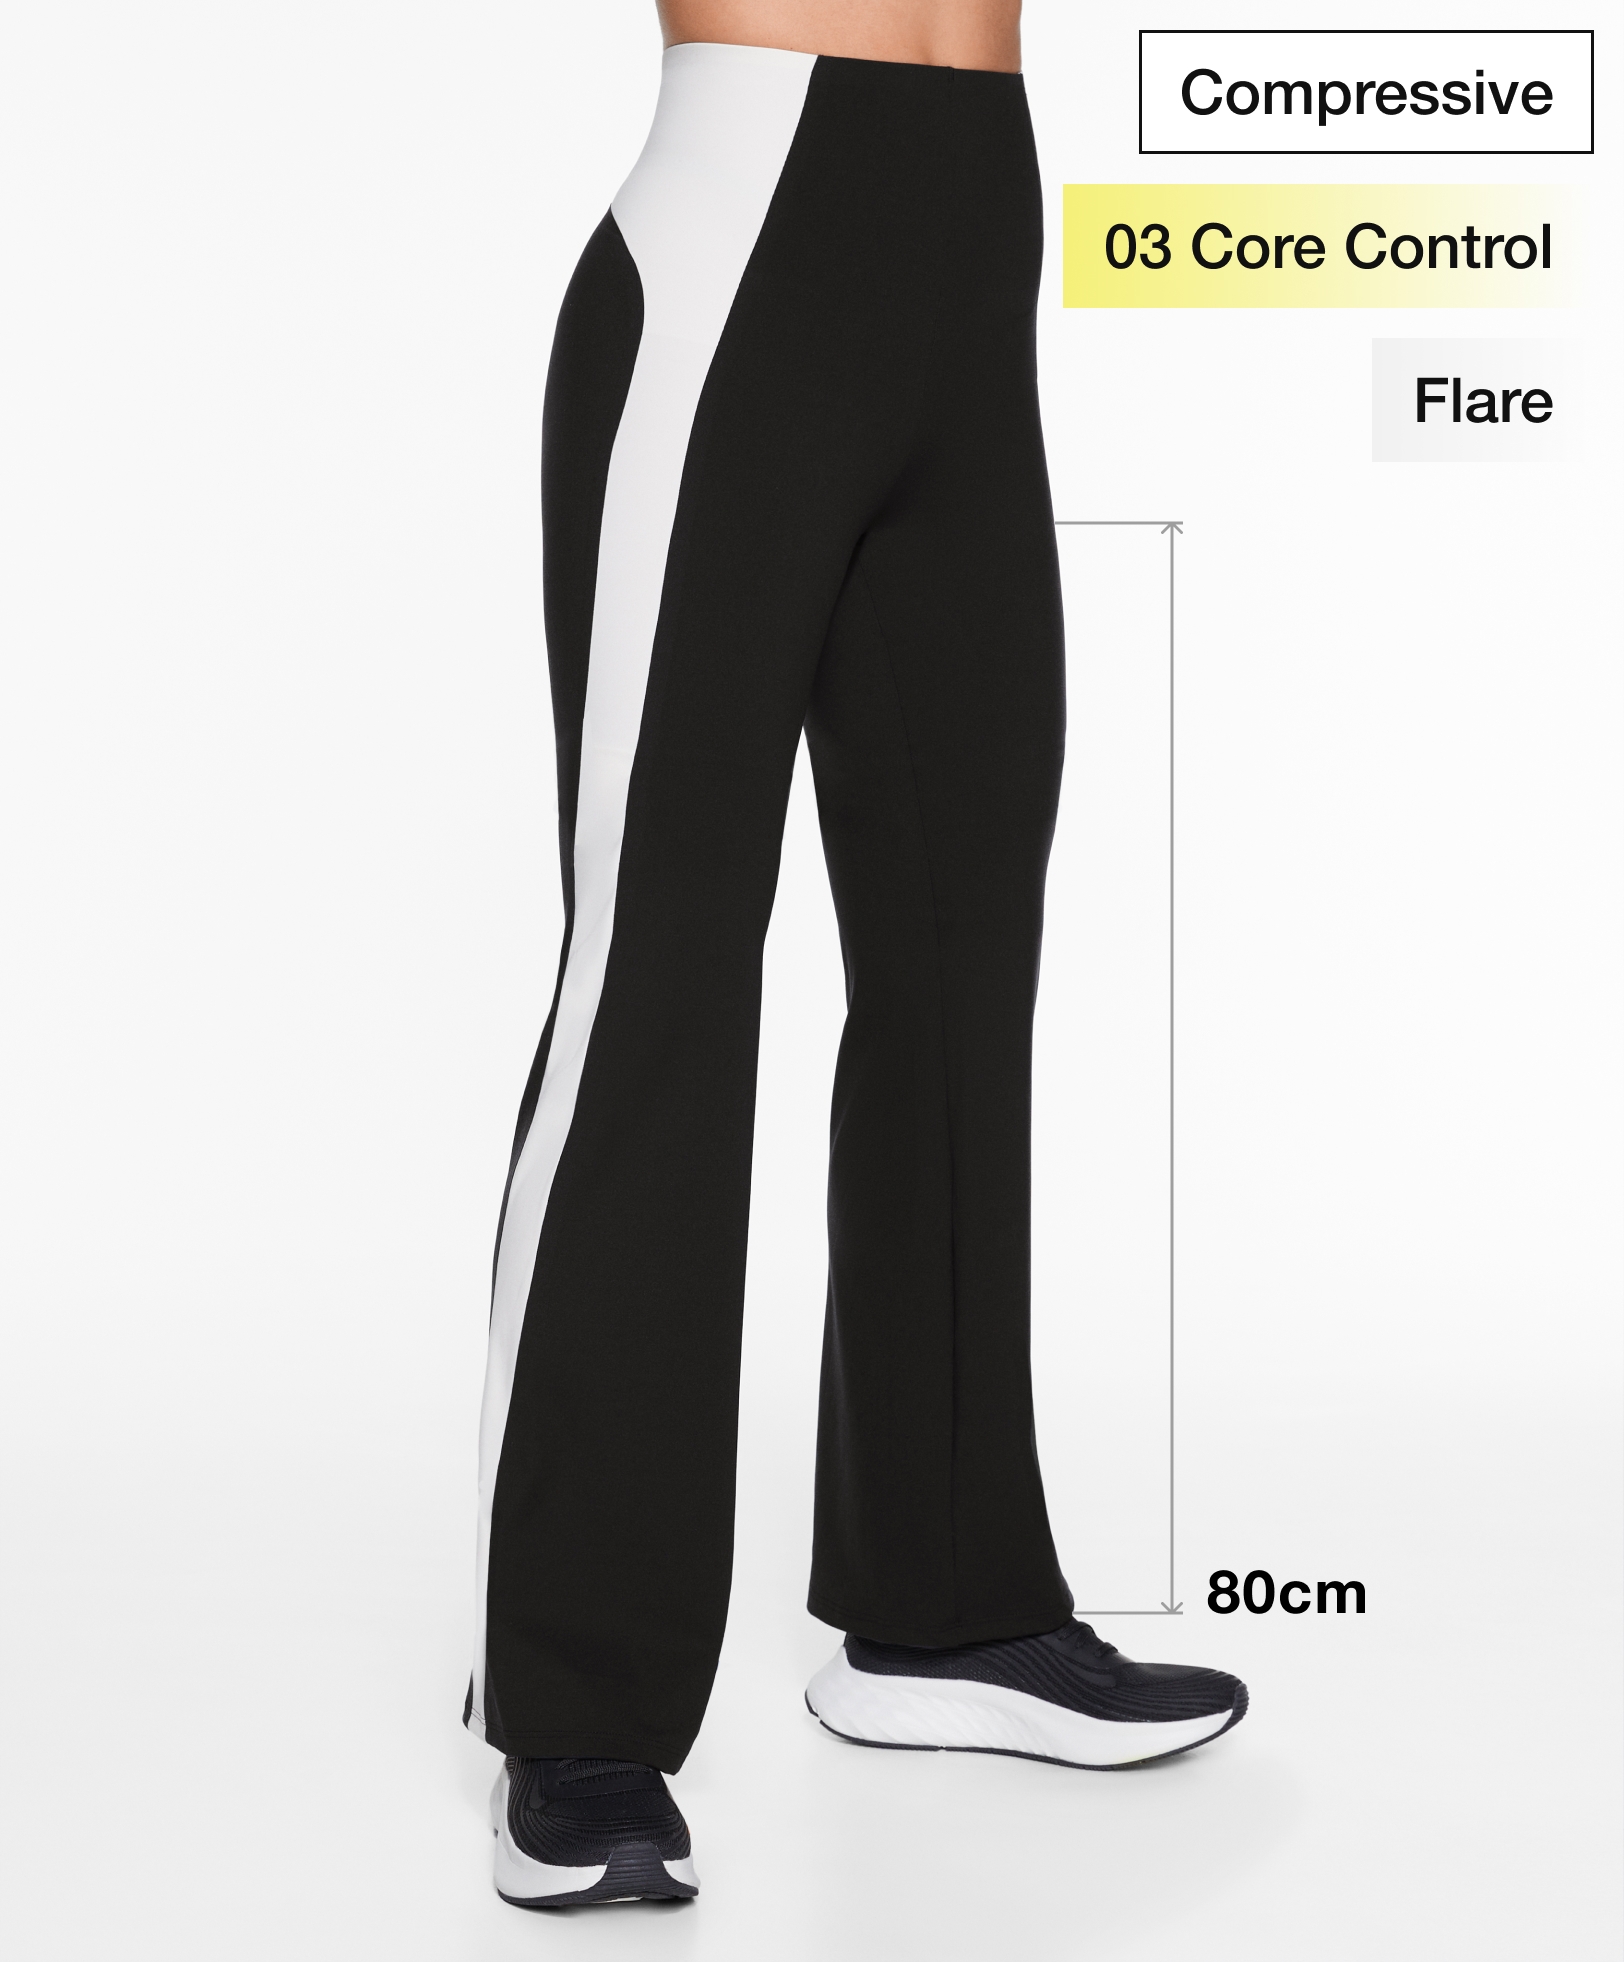 Compressive core control block flare trousers